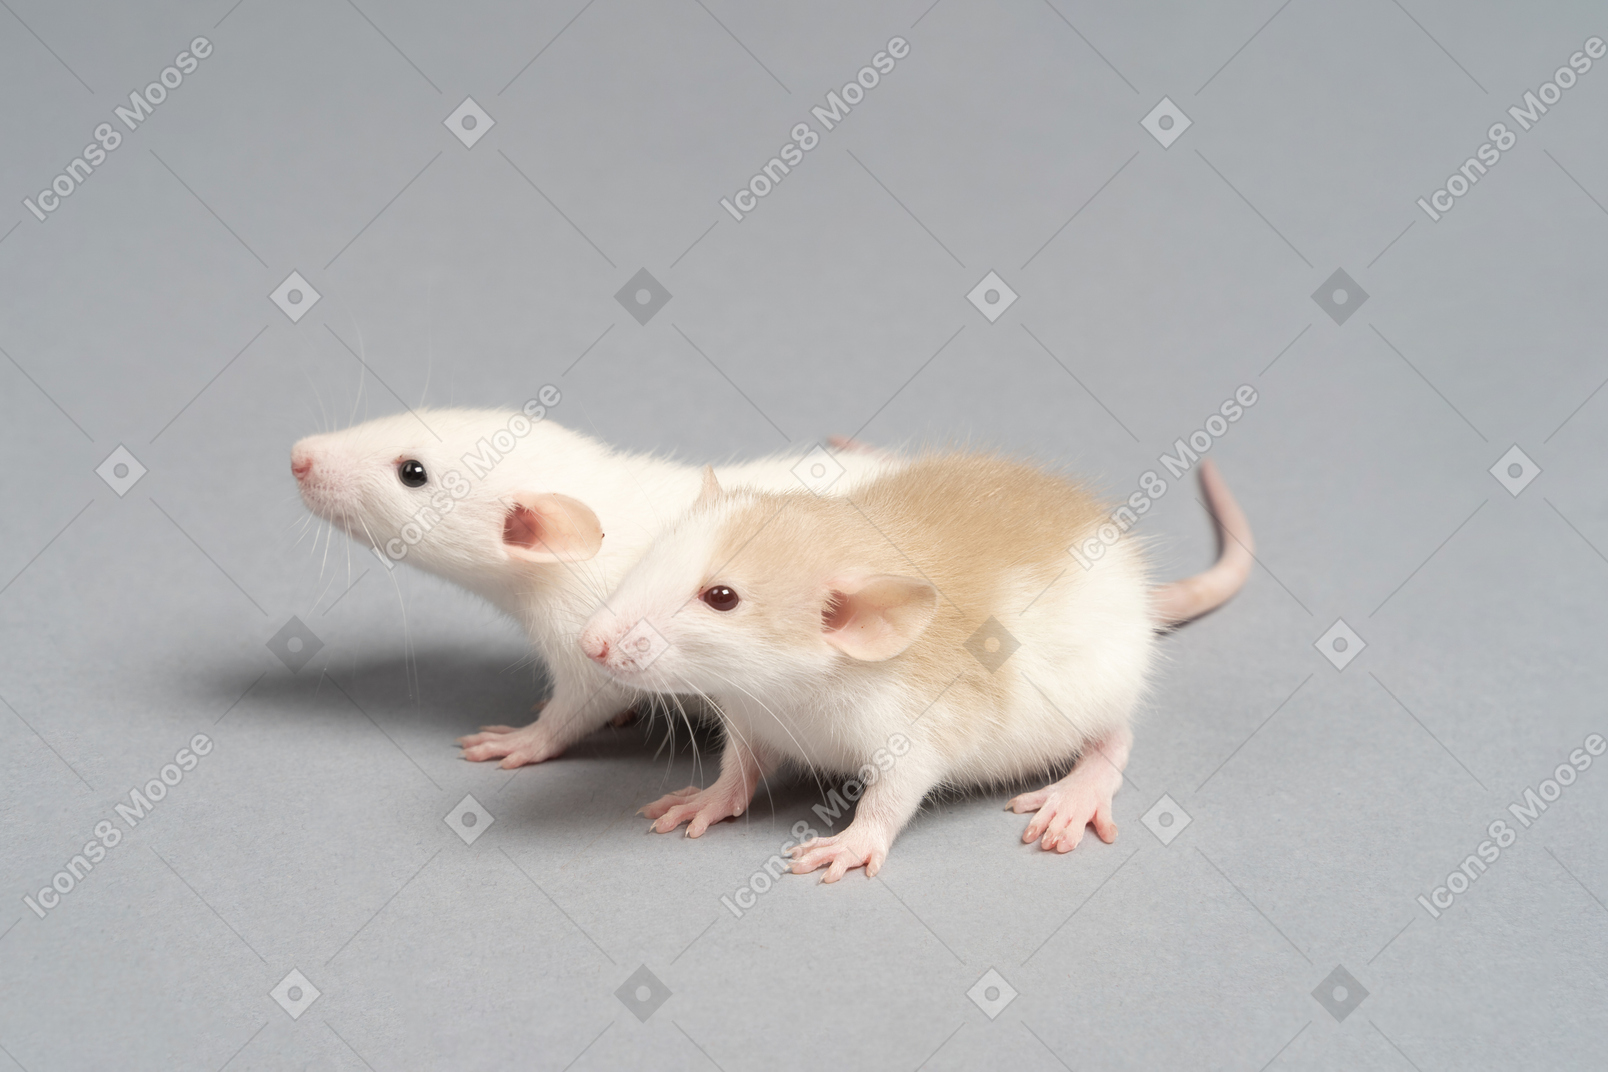 2つのかわいいふわふわマウス